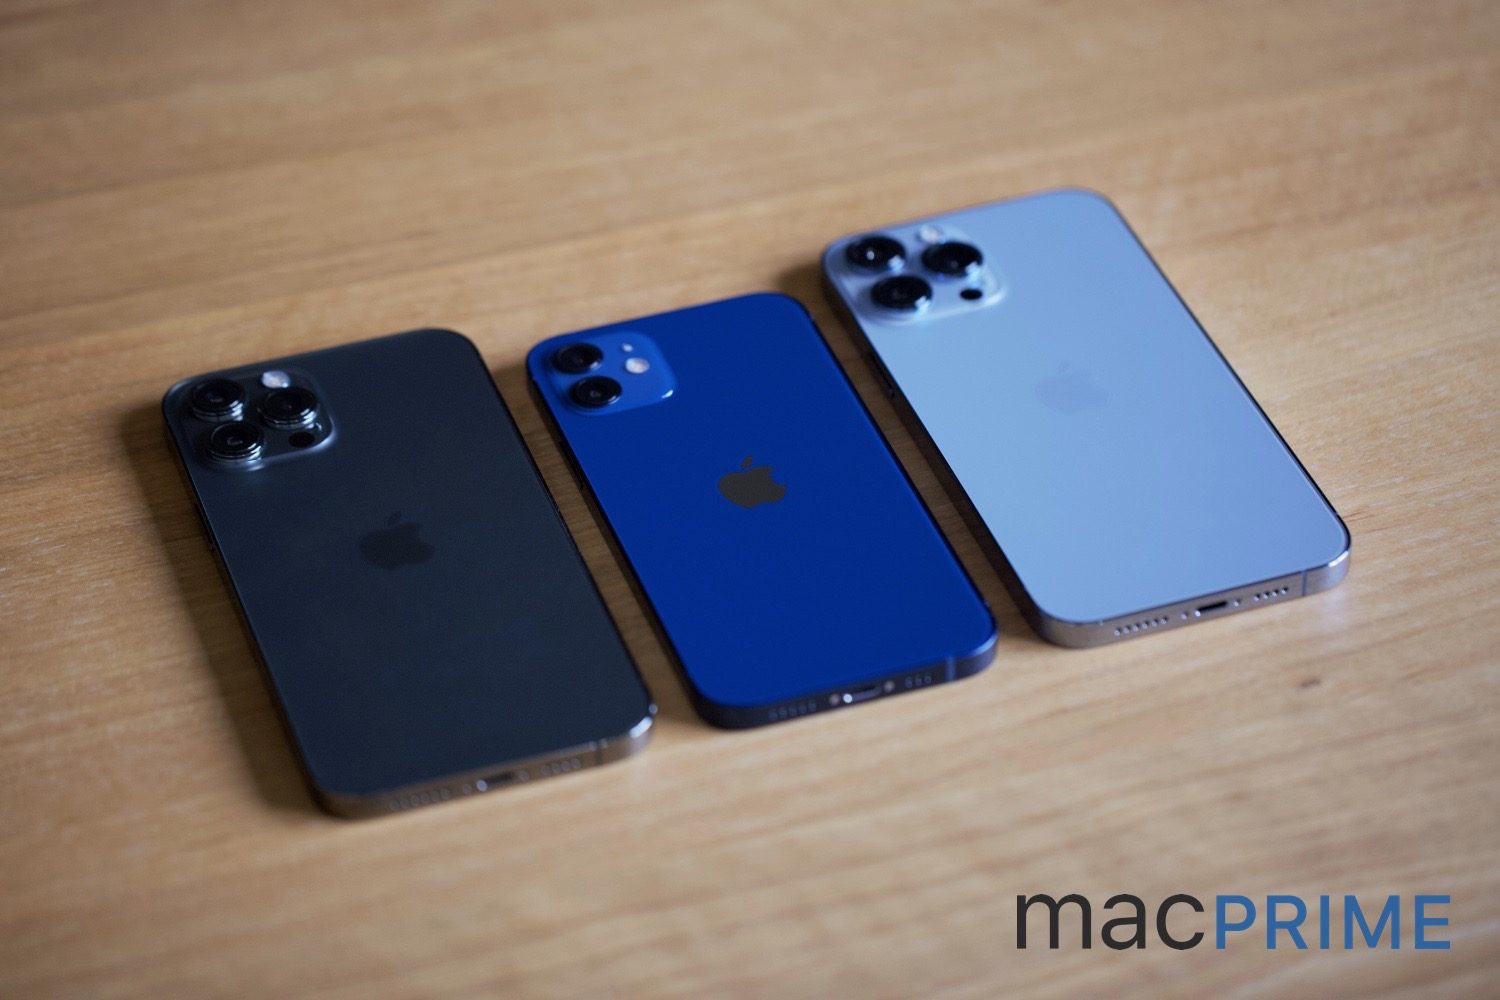 Farblicher Unterschied: Das «Graphit» beim iPhone 12 Pro Max und im Vergleich das «Blau» des iPhone 12 gegenüber dem «Sierrablau» des neuen iPhone 13 Pro Max.